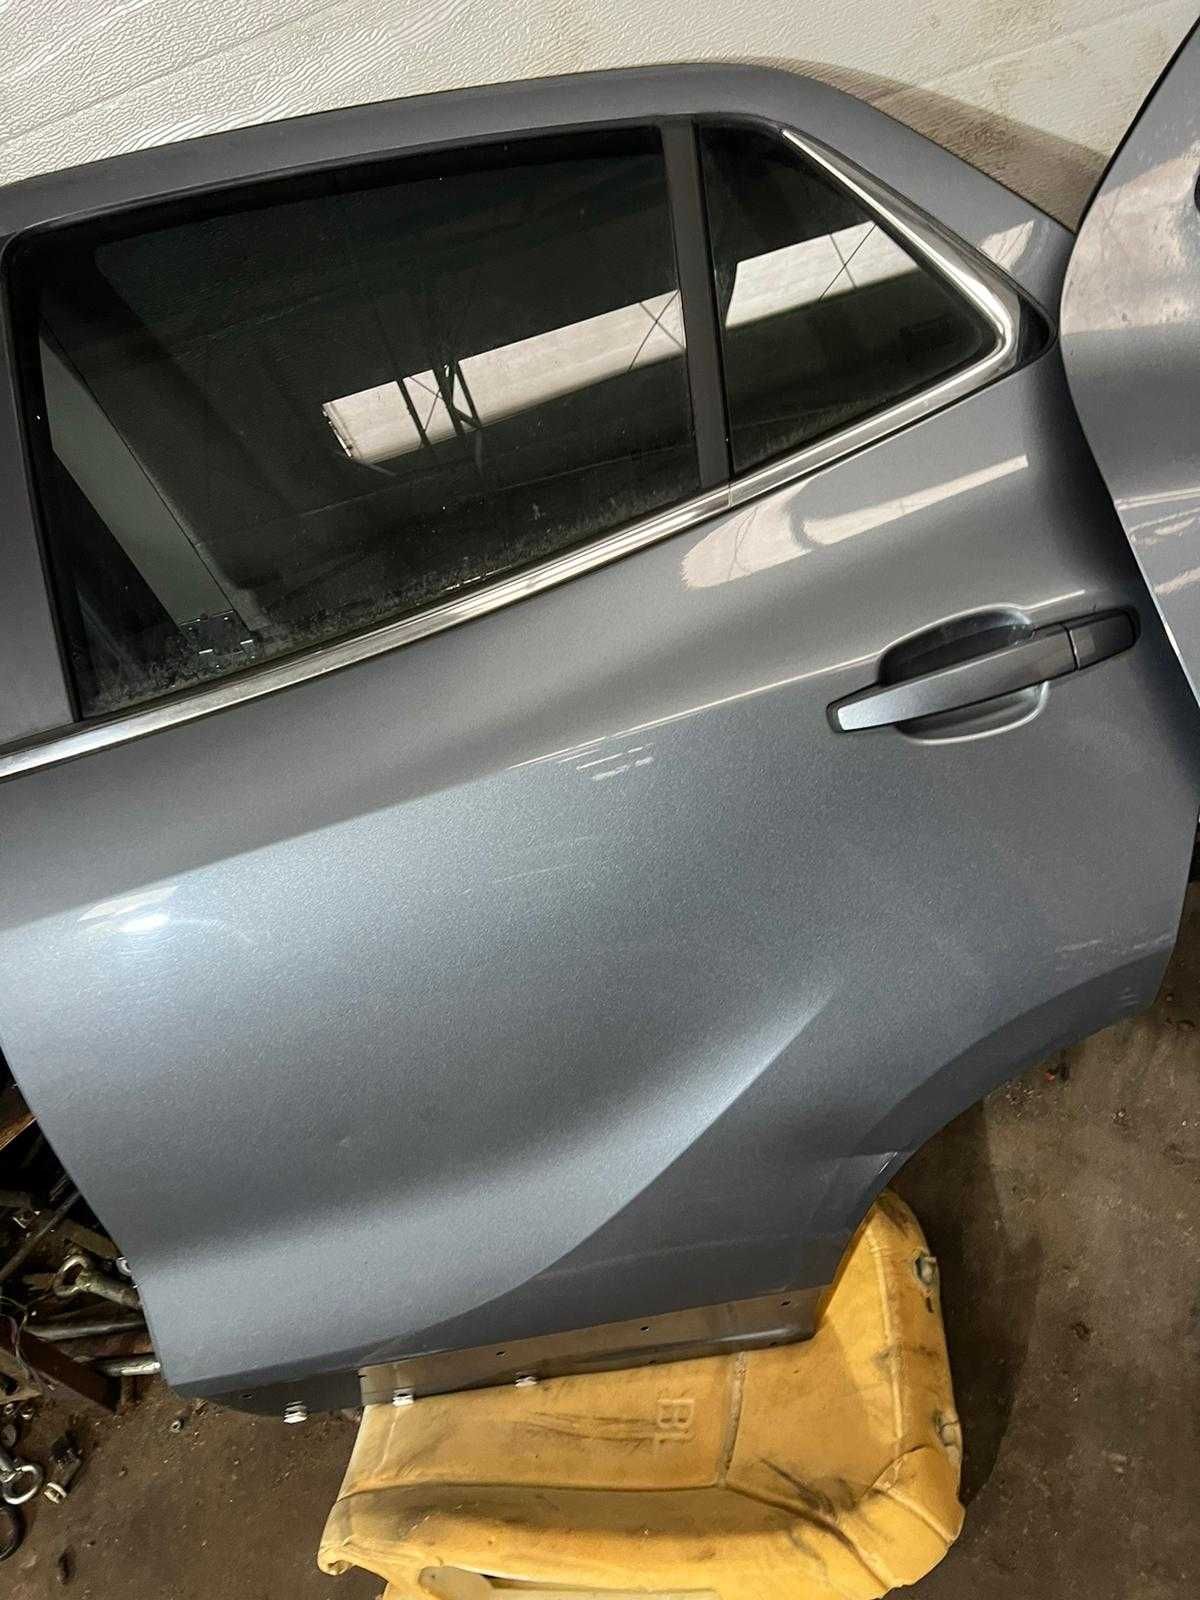 Drzwi Opel Mokka tylne prawe uszkodzone